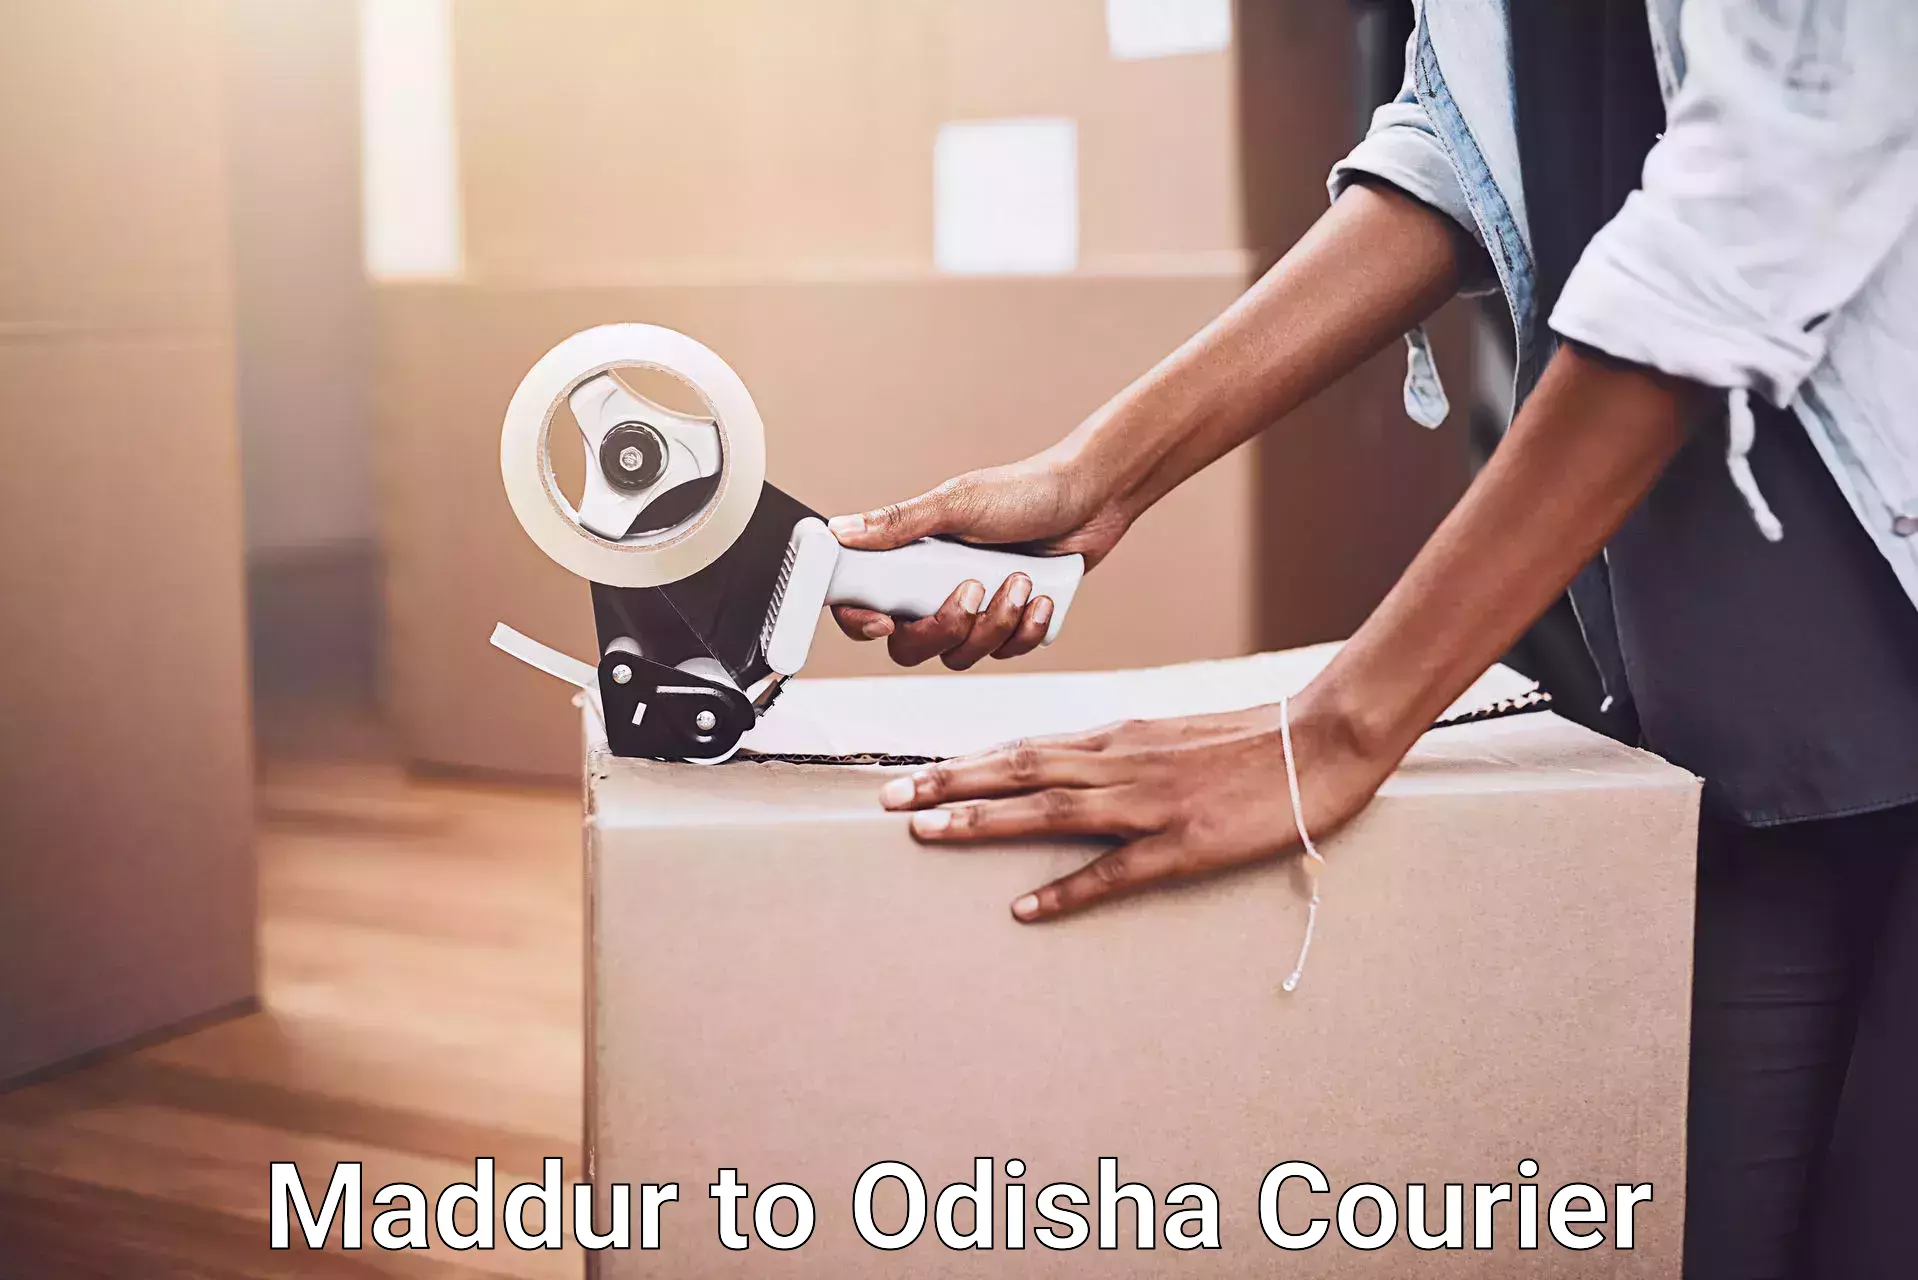 Furniture delivery service Maddur to Birmitrapur